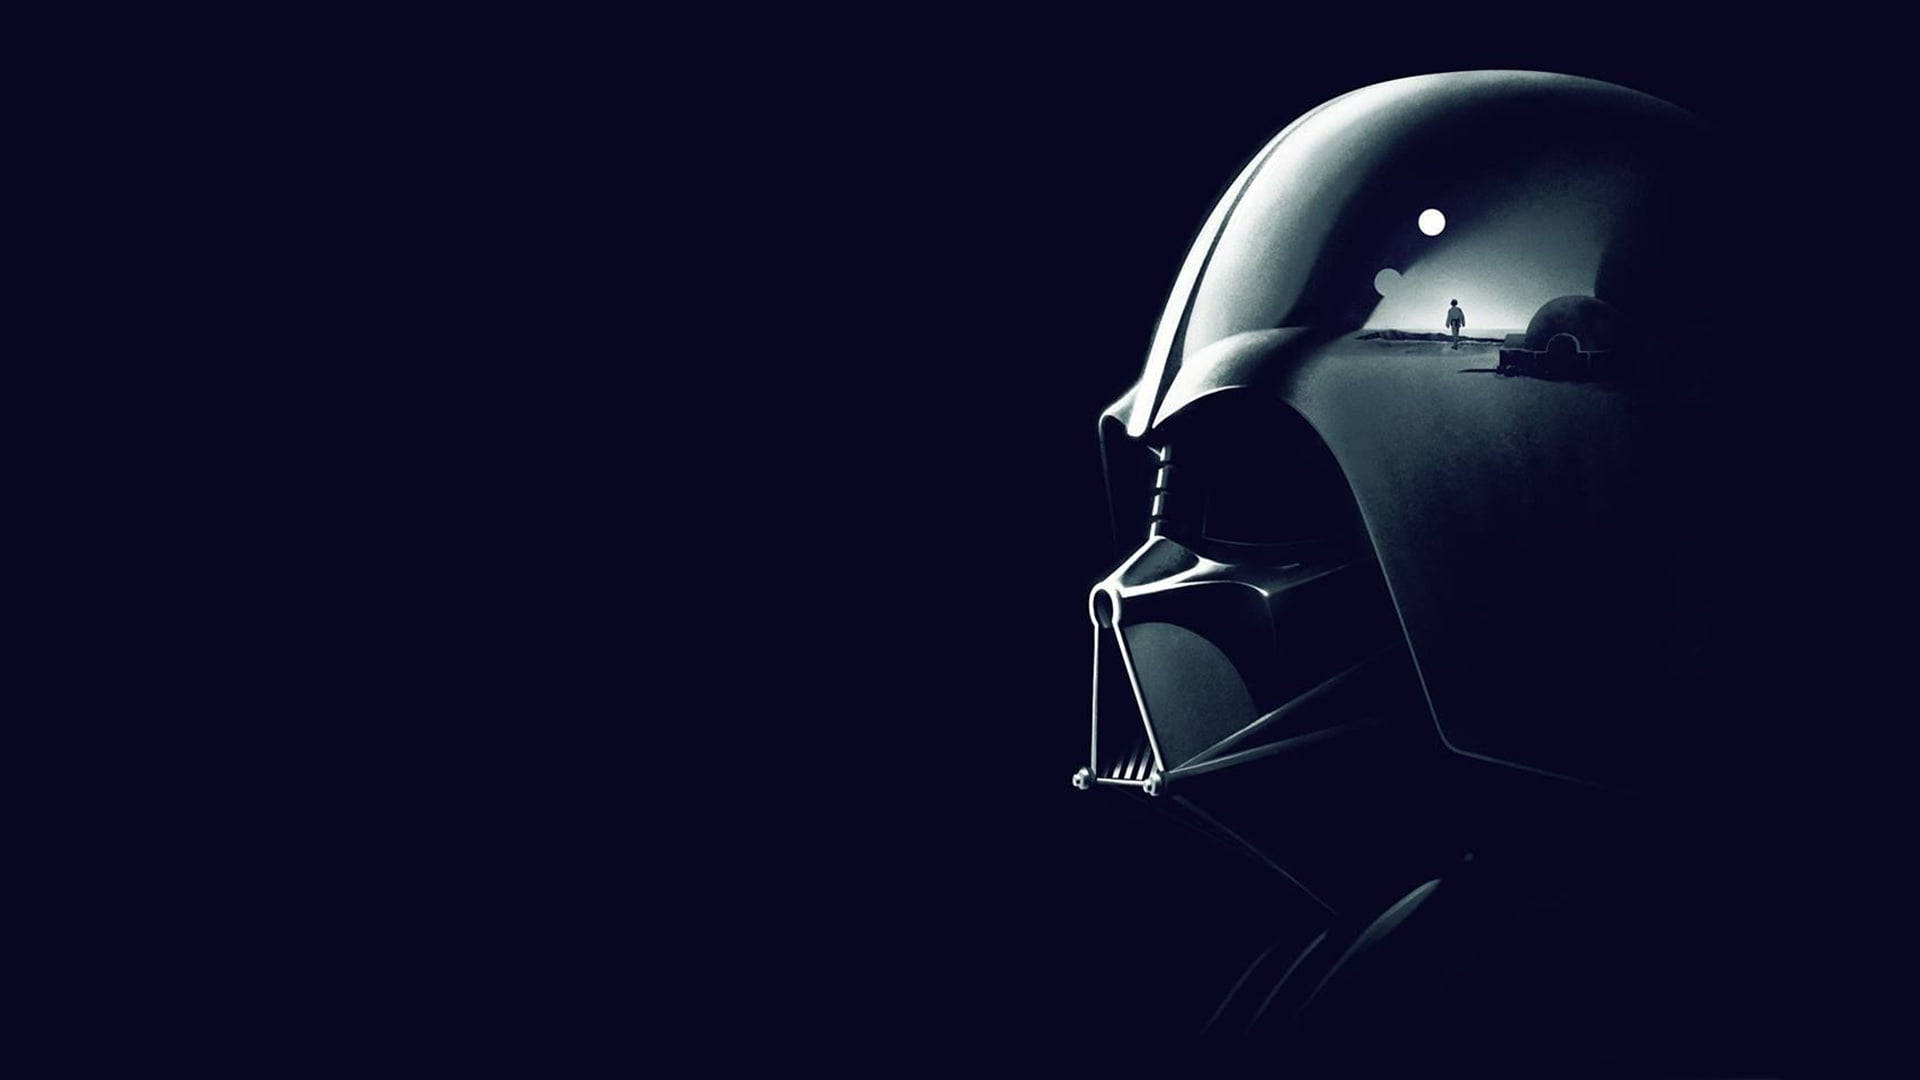 The iconic helmet of Star Wars villain Darth Vader Wallpaper